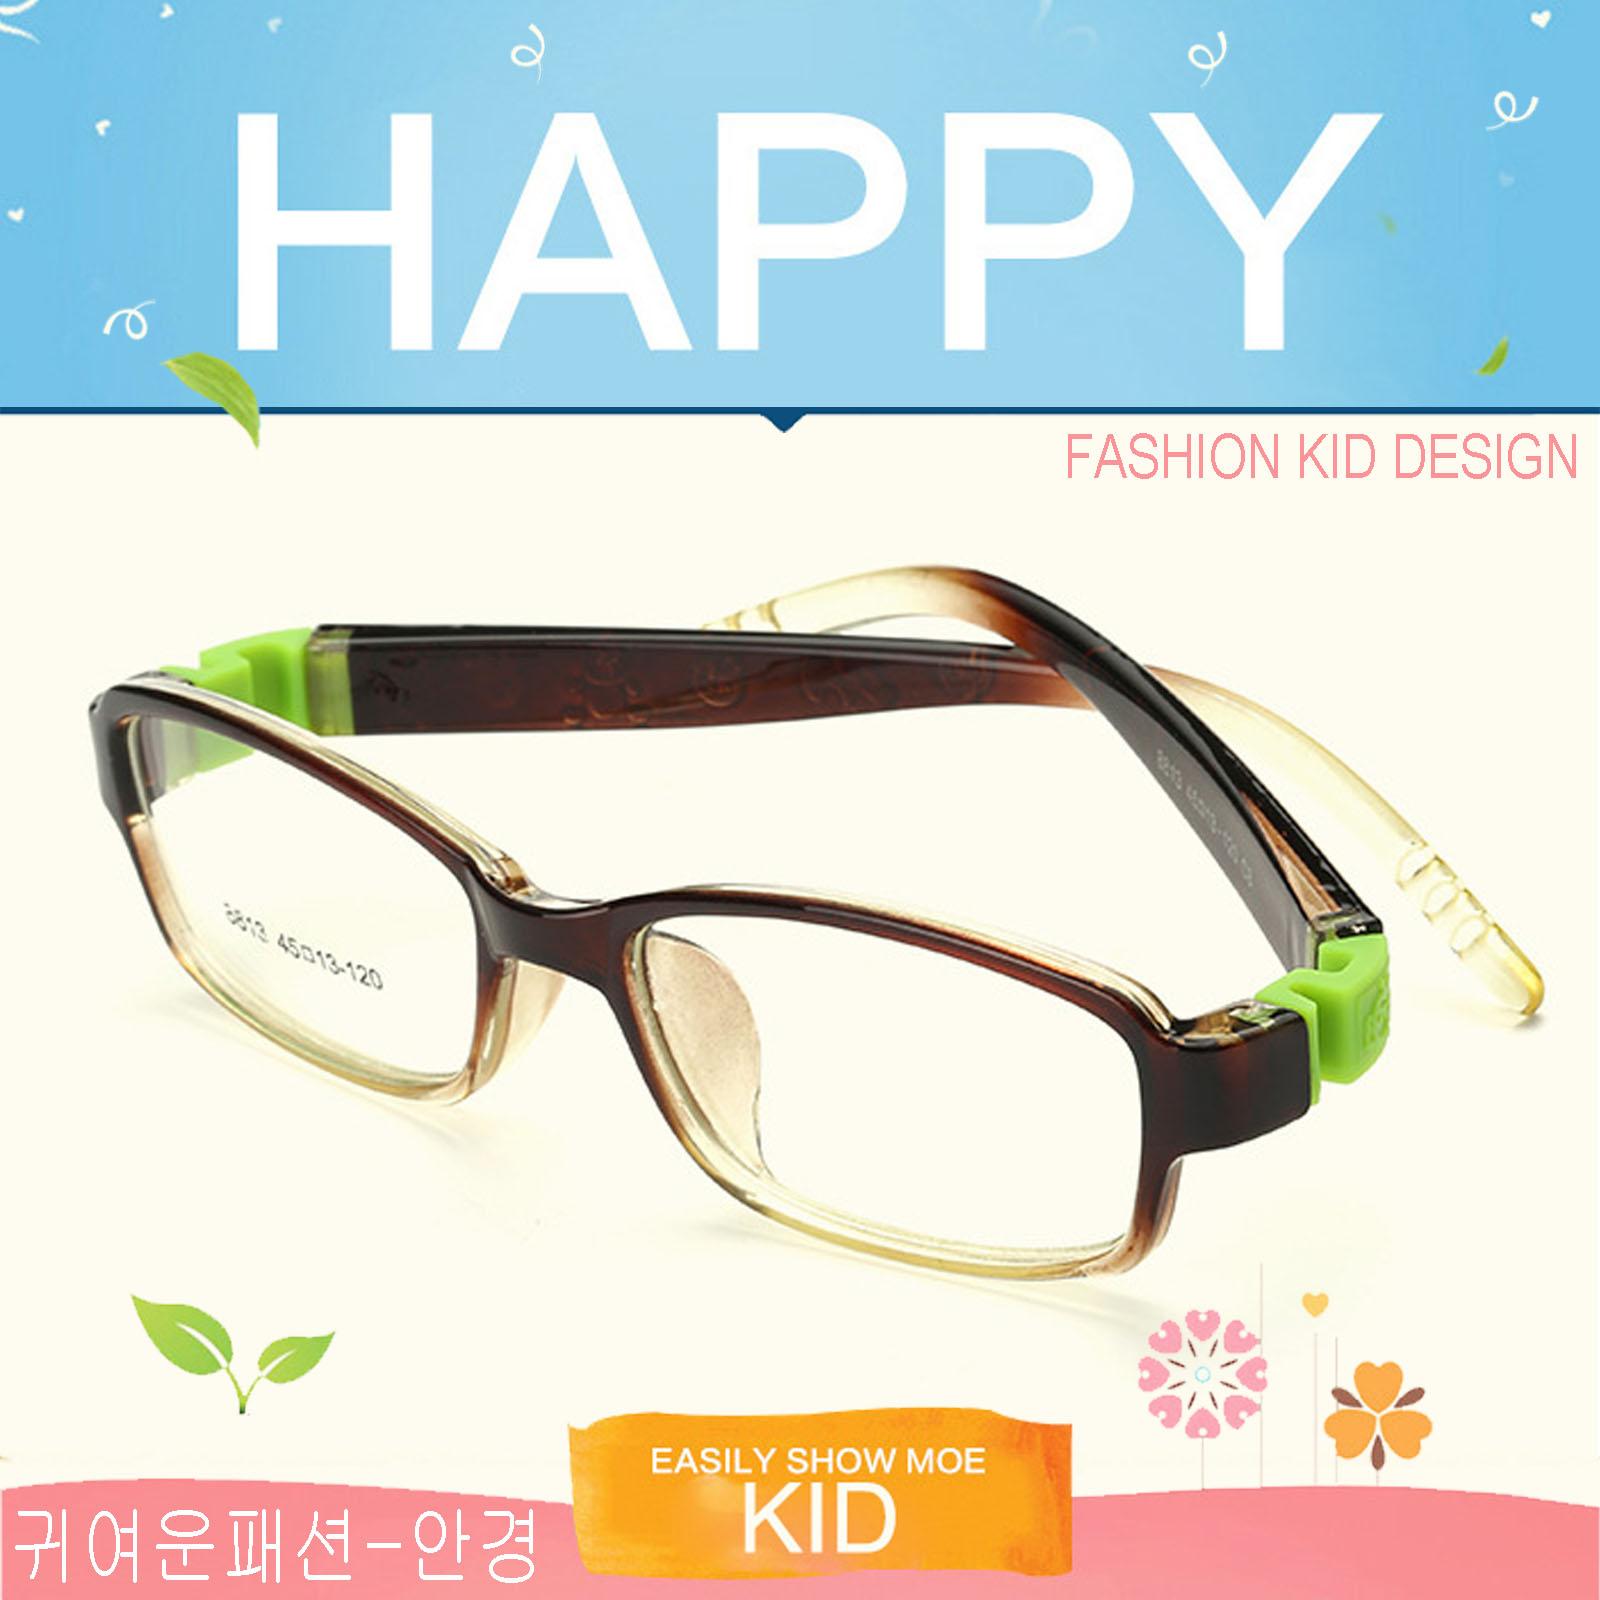 แว่นตาเกาหลีเด็ก Fashion Korea Children แว่นตาเด็ก รุ่น 8813 C-8 สีน้ำตาลใสขาน้ำตาลข้อเขียว กรอบแว่นตาเด็ก Rectangle ทรงสี่เหลี่ยมผืนผ้า Eyeglass baby frame วัสดุ PC เบา ขาข้อต่อ Kid leg joints Plastic Grade A material Eyewear Top Glasses